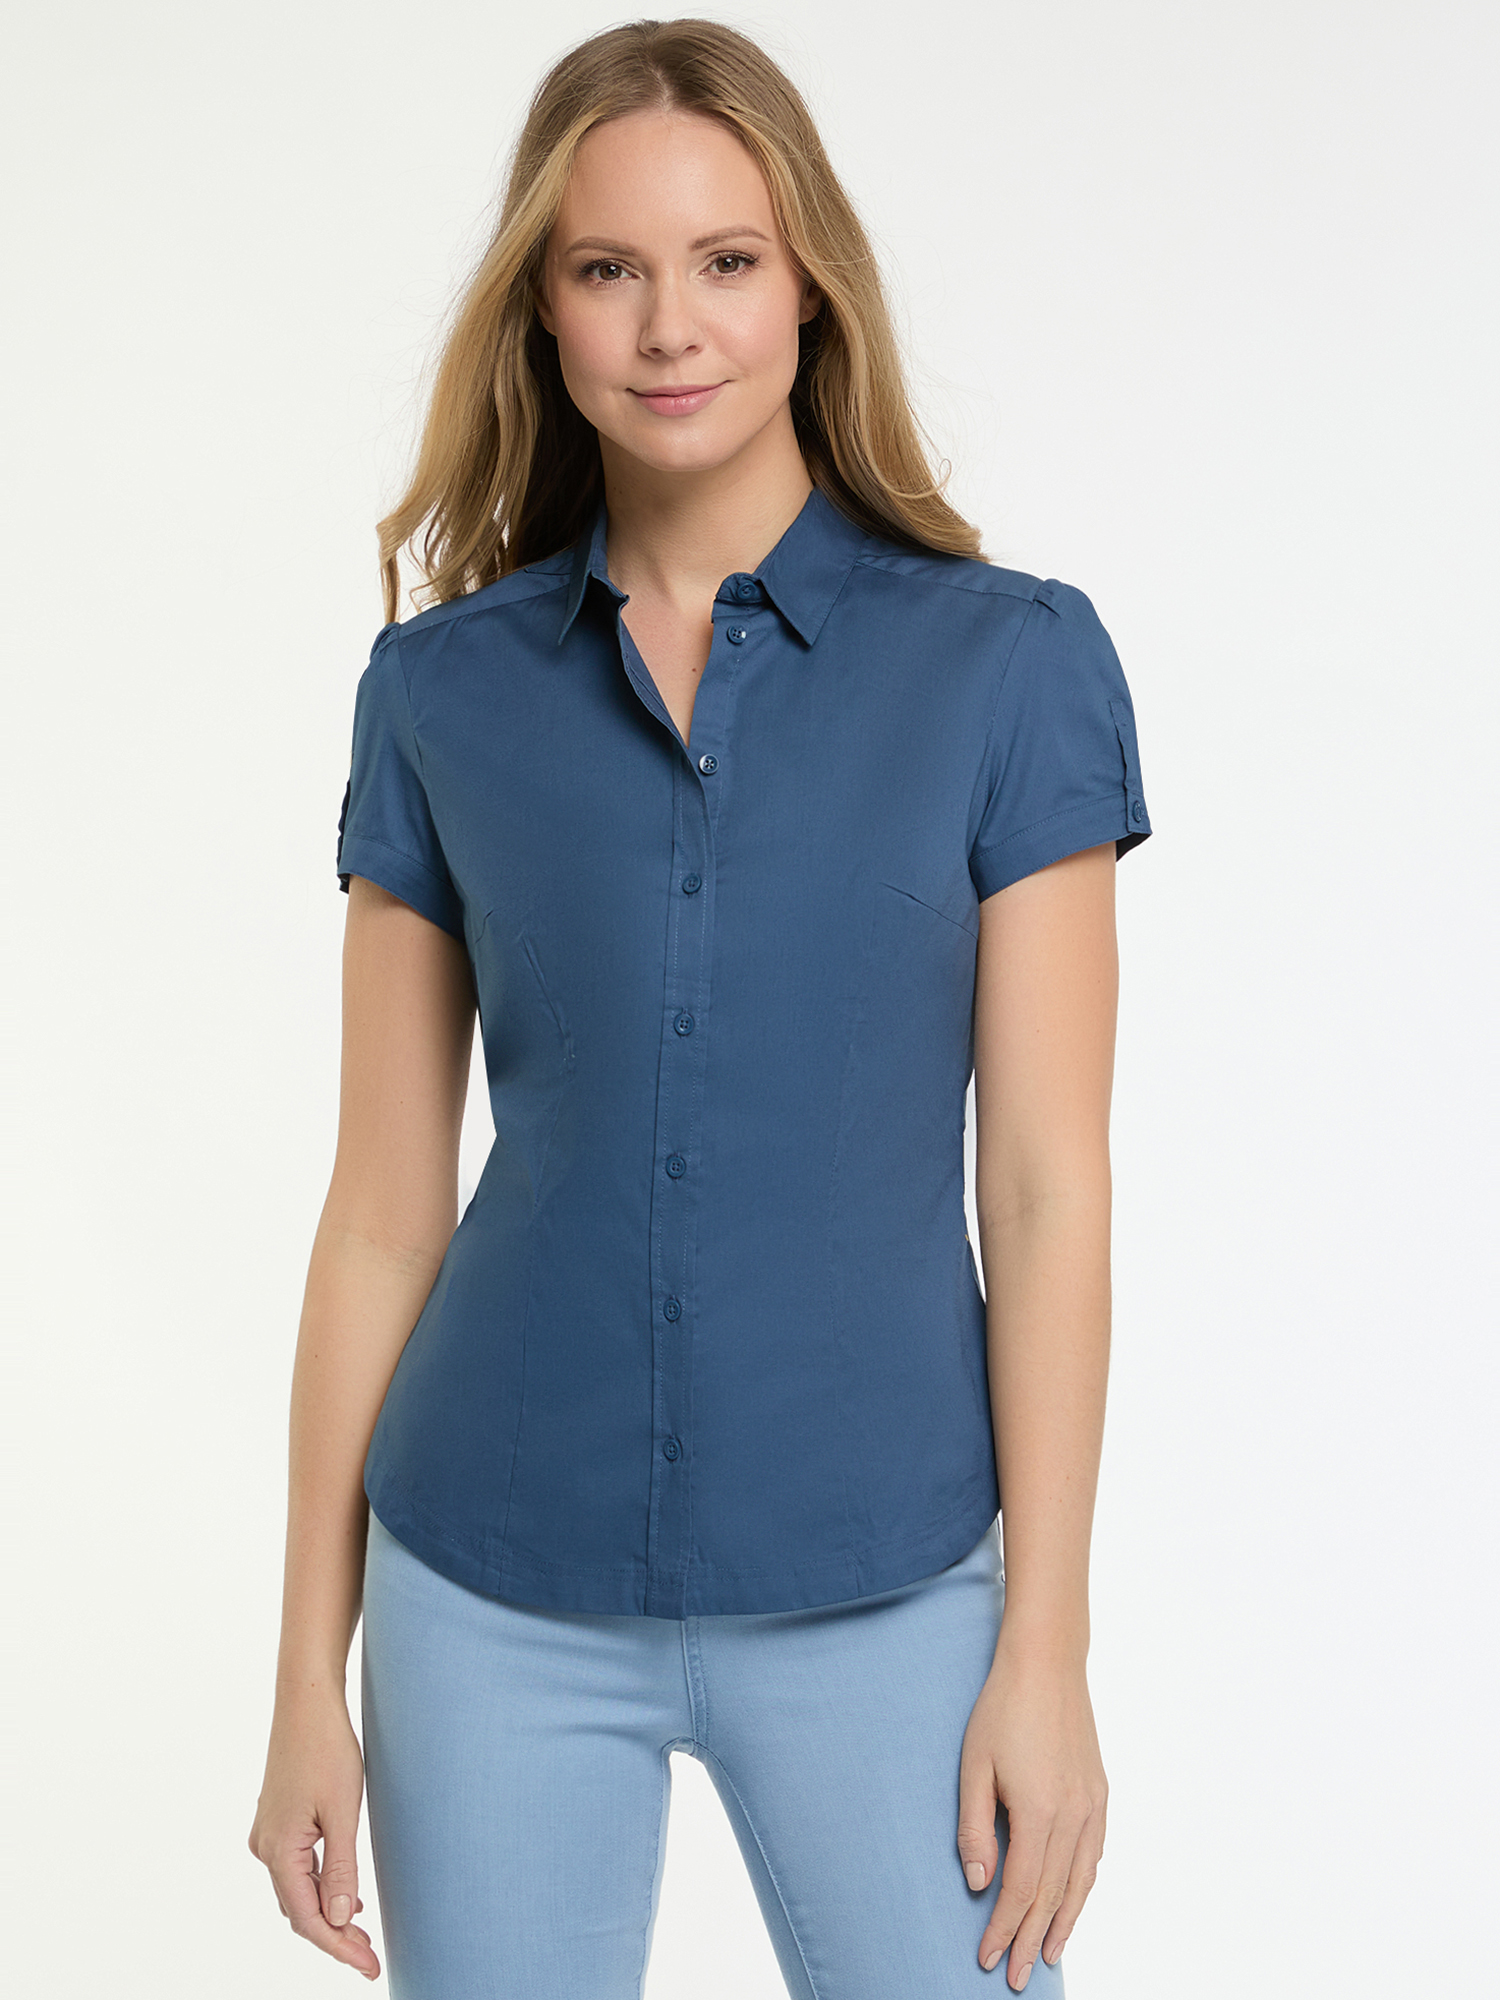 Рубашка женская oodji 13K01004-1B синяя 44 EU